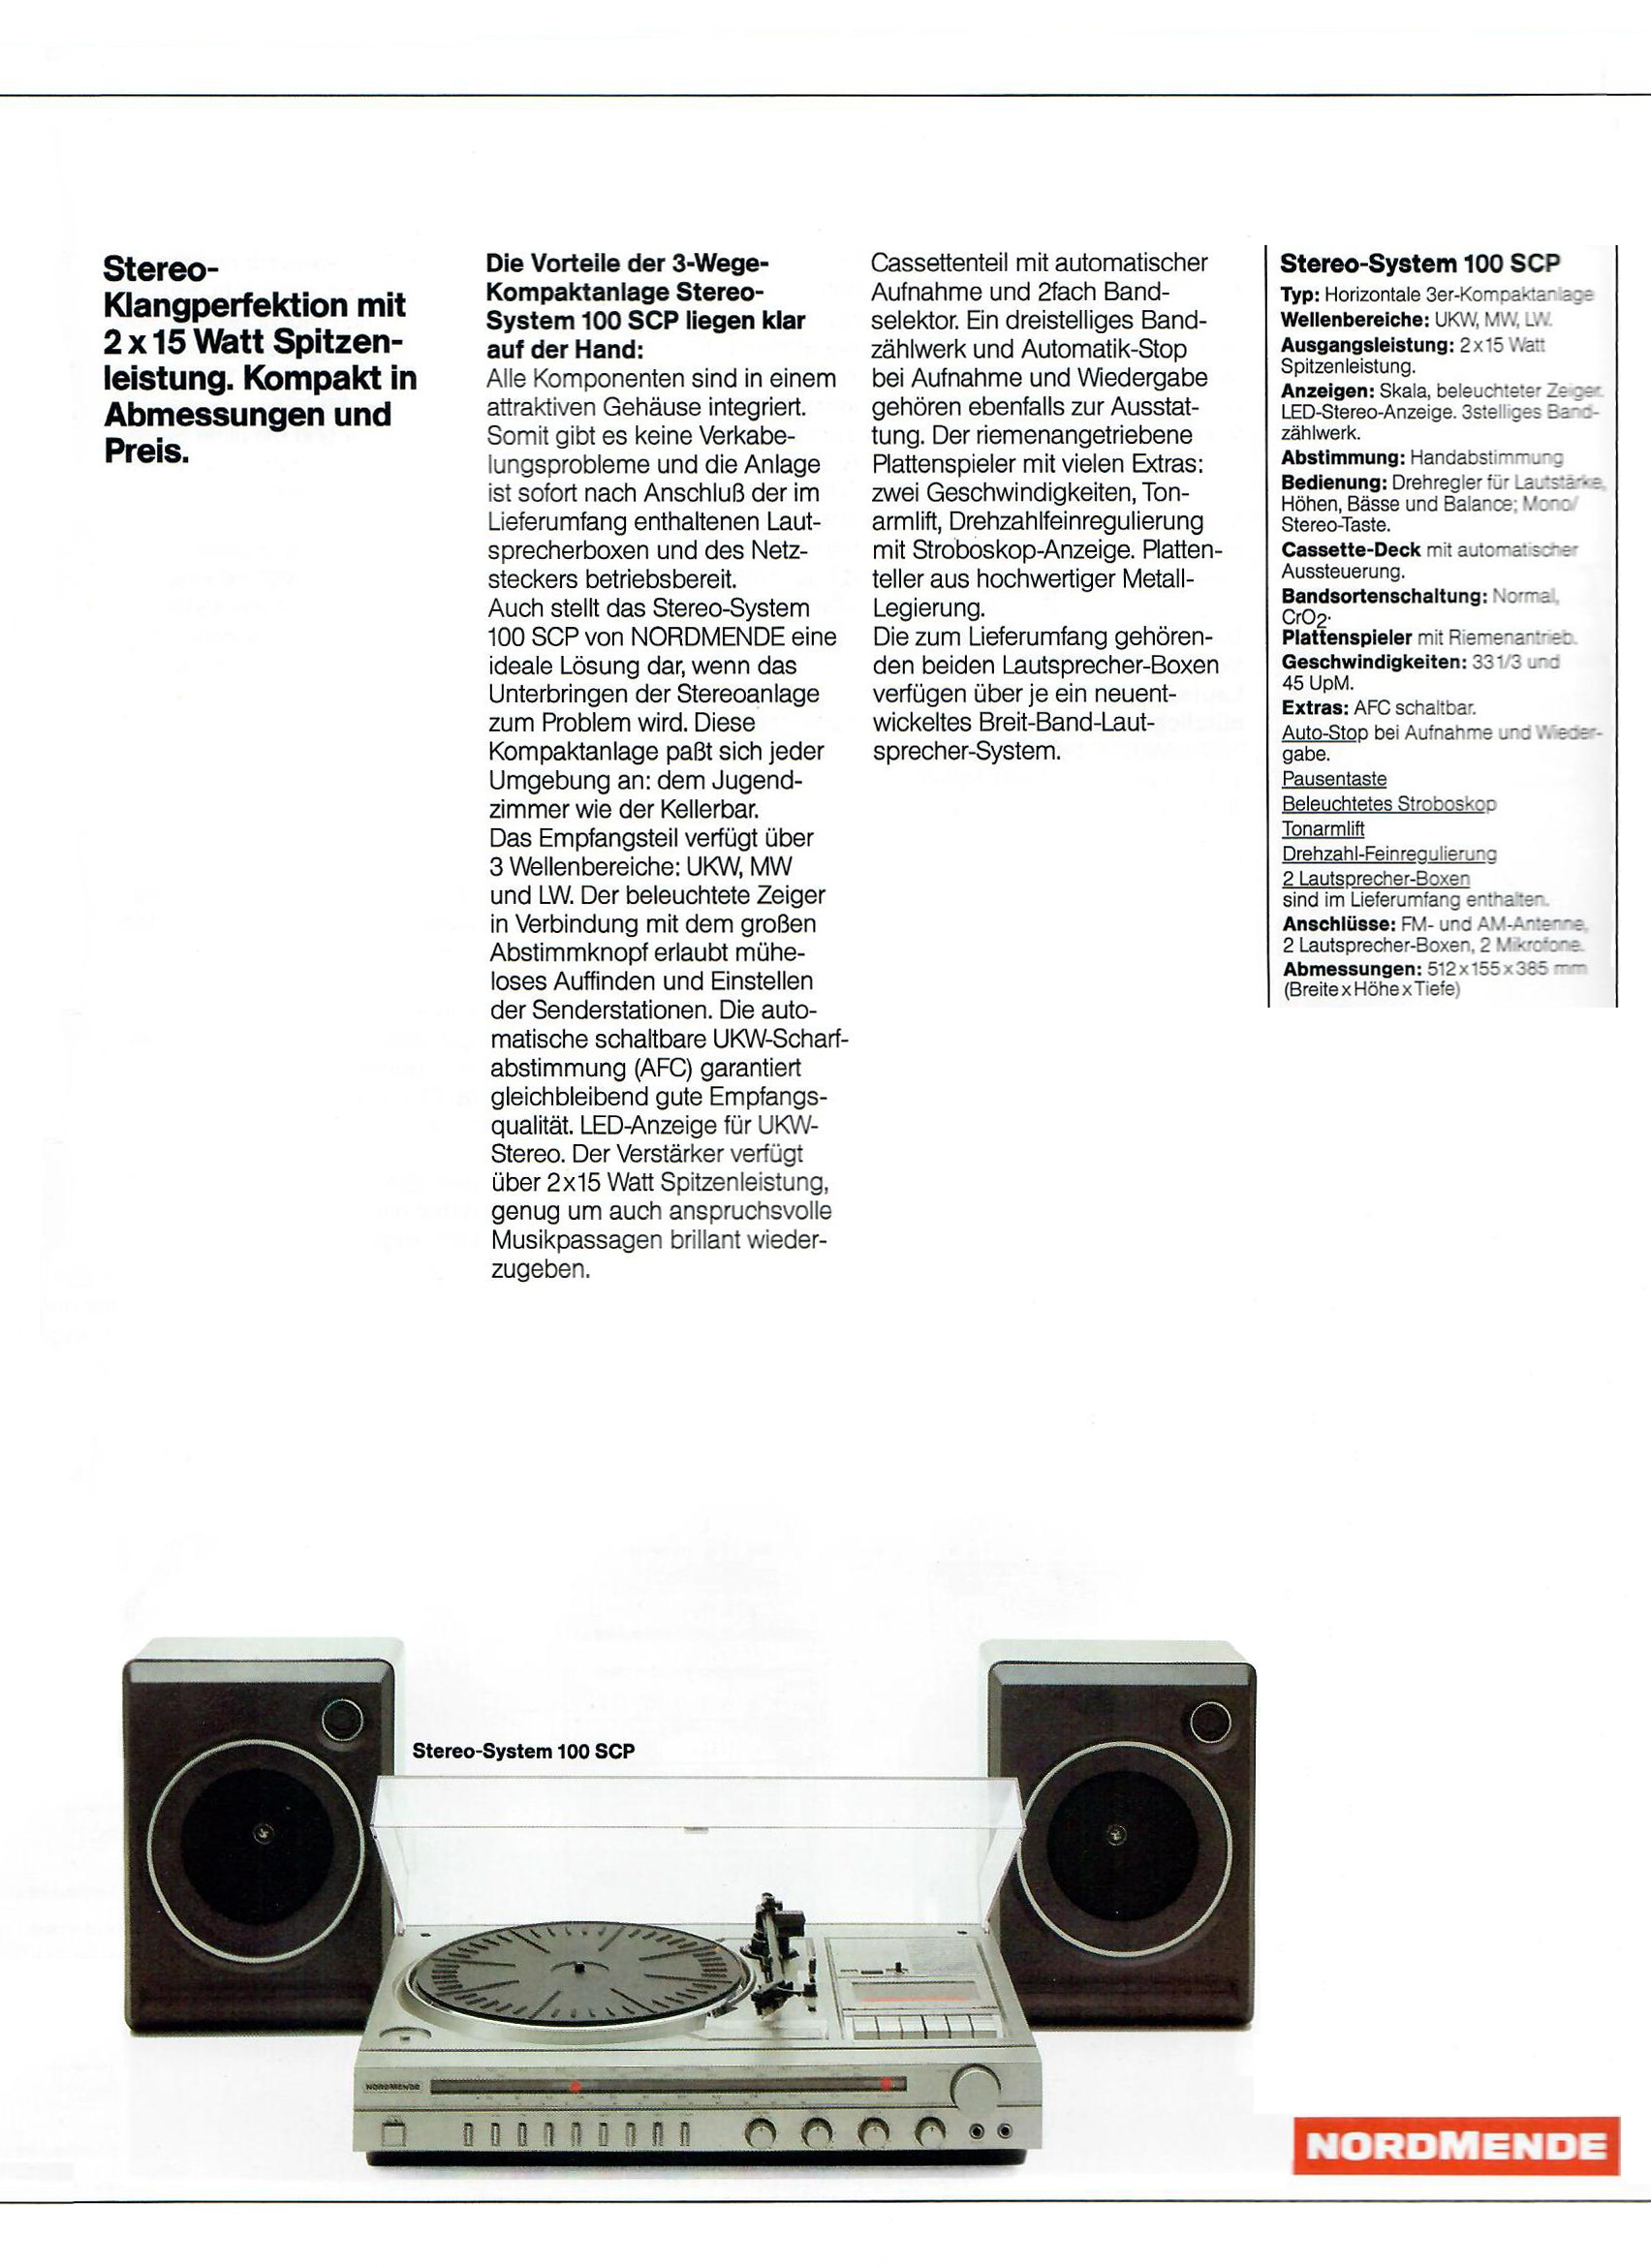 Nordmende Stereo System 100 SCP-Prospekt-1982.jpg